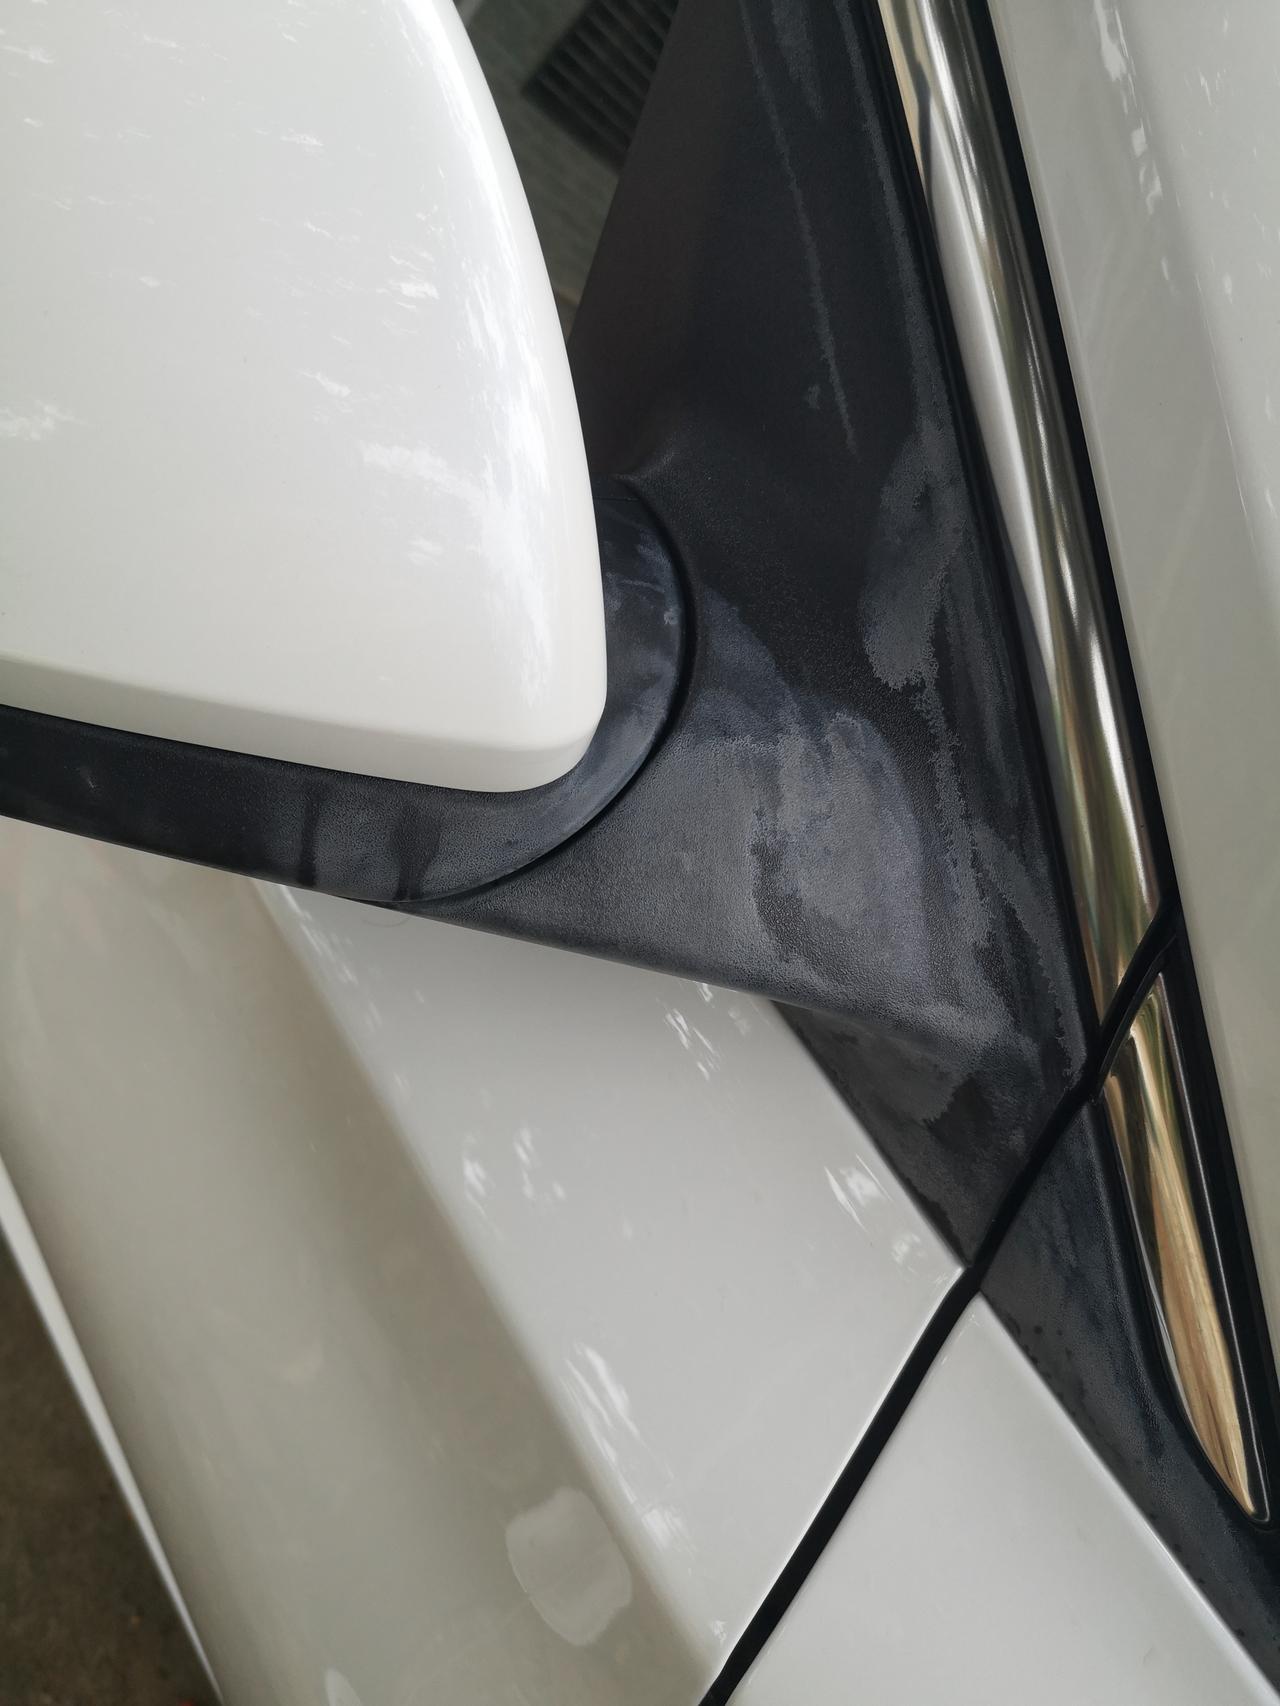 长安逸动 老妈洗车用某种不明液体伤到车漆了，有什么补救方法吗